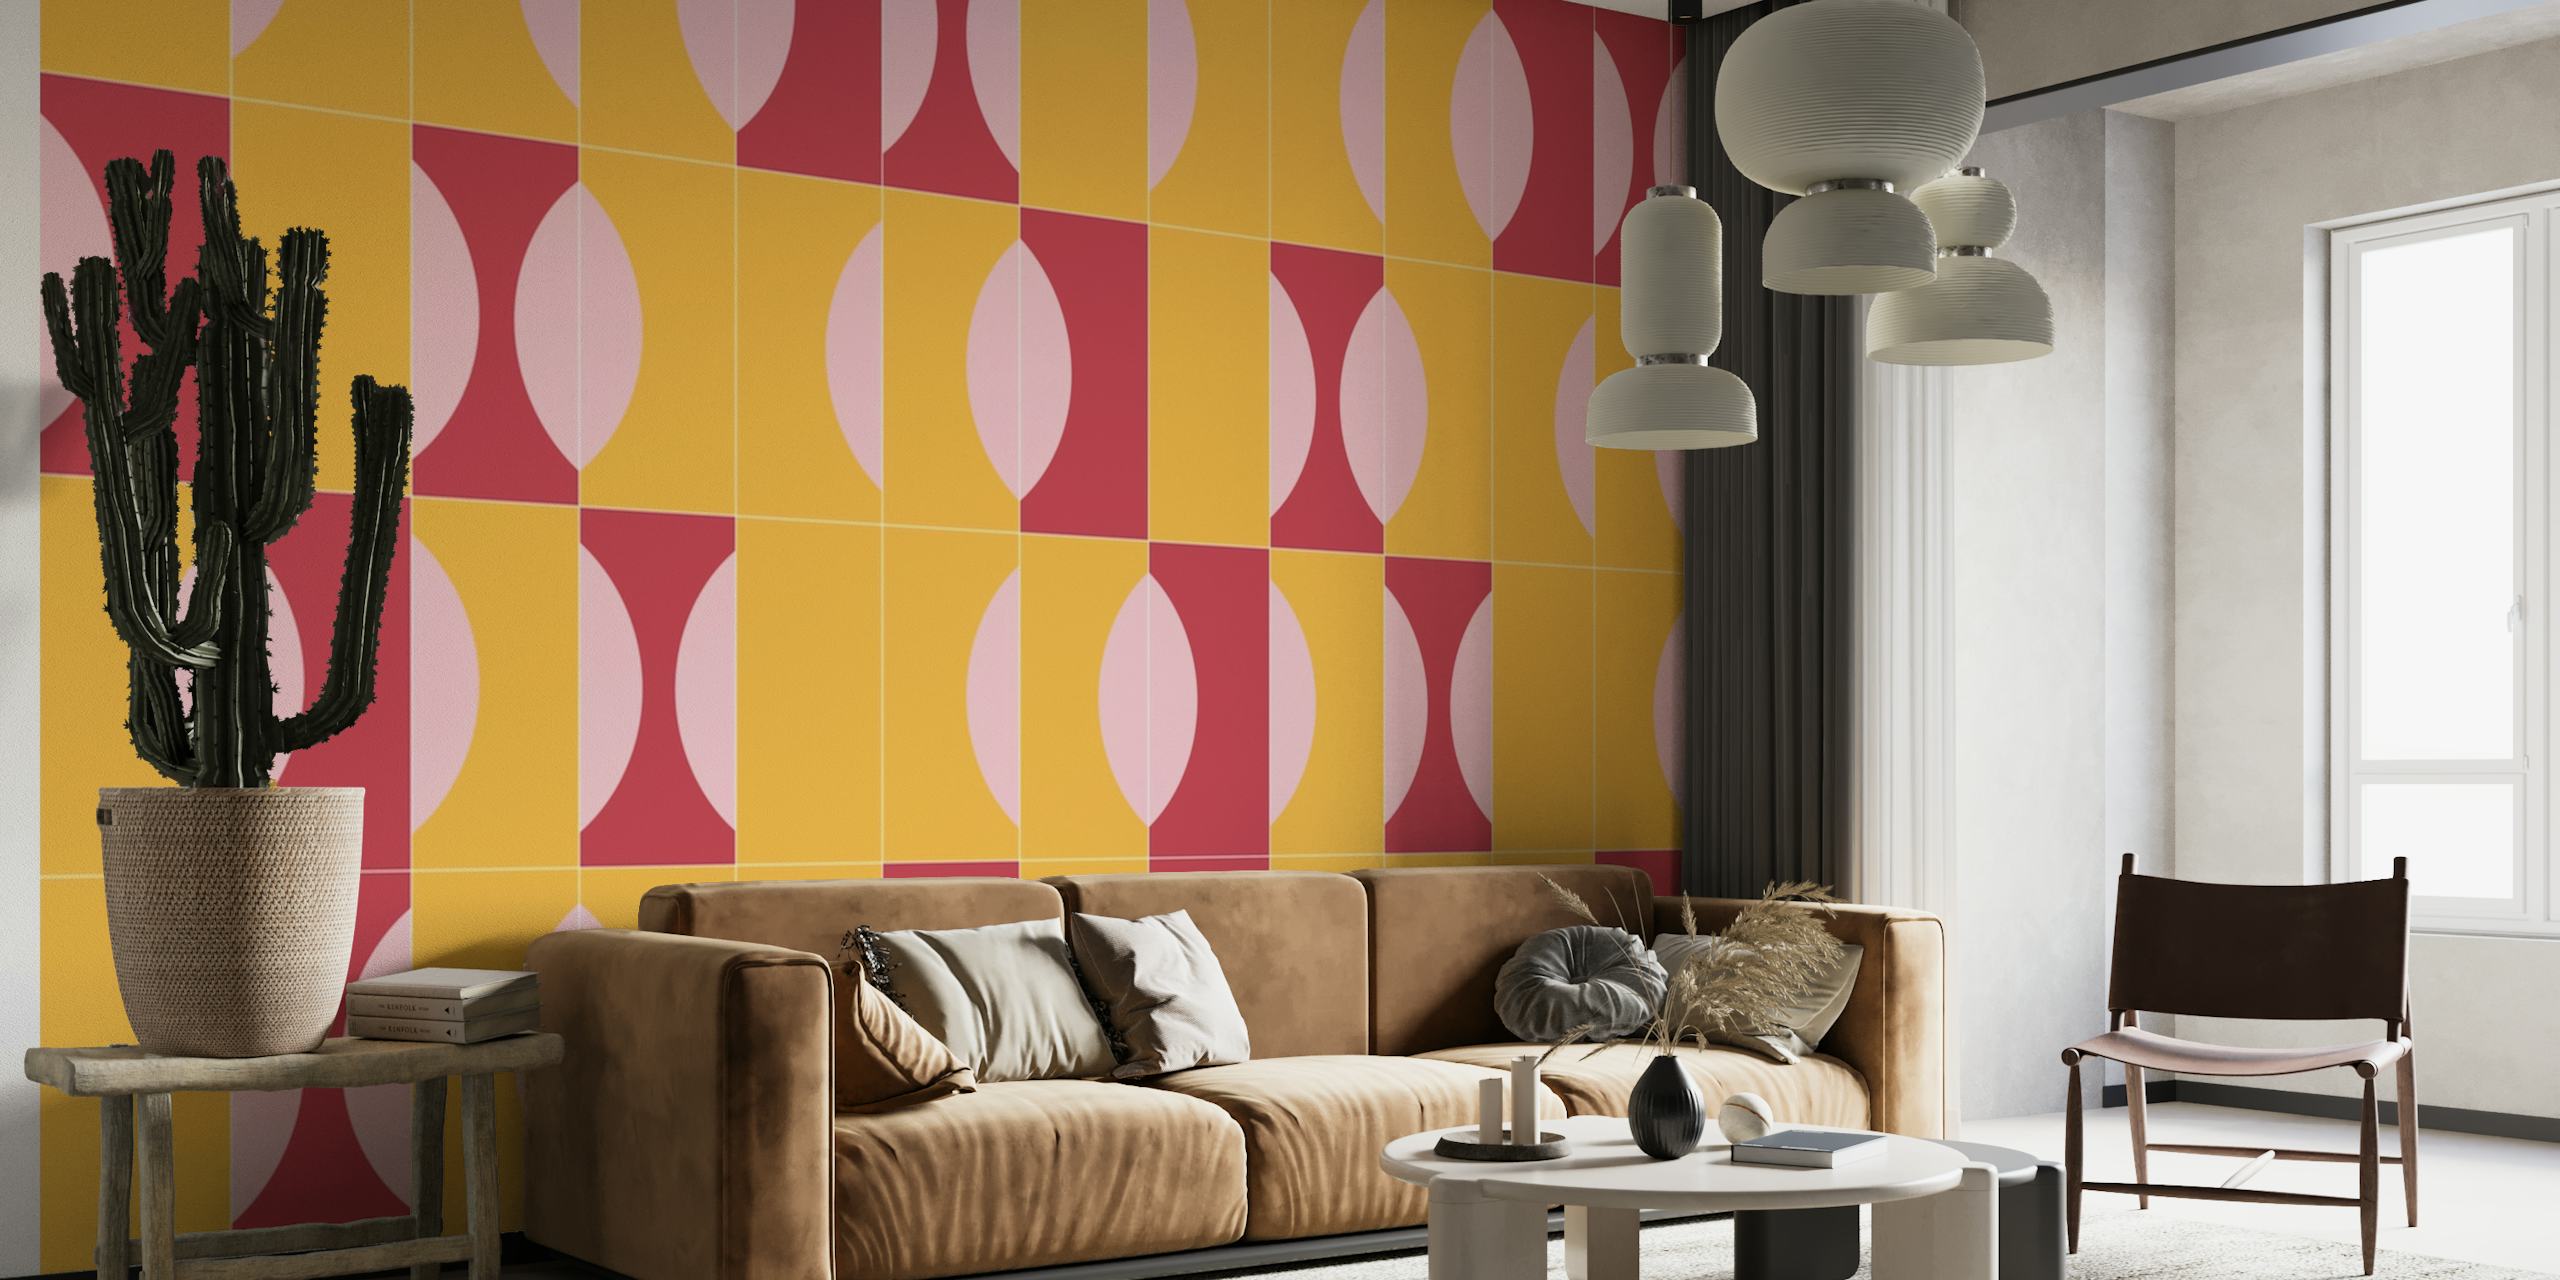 Papier peint mural abstrait Sunny Tiles 03 présentant des formes géométriques dans des tons orange, rose et lavande